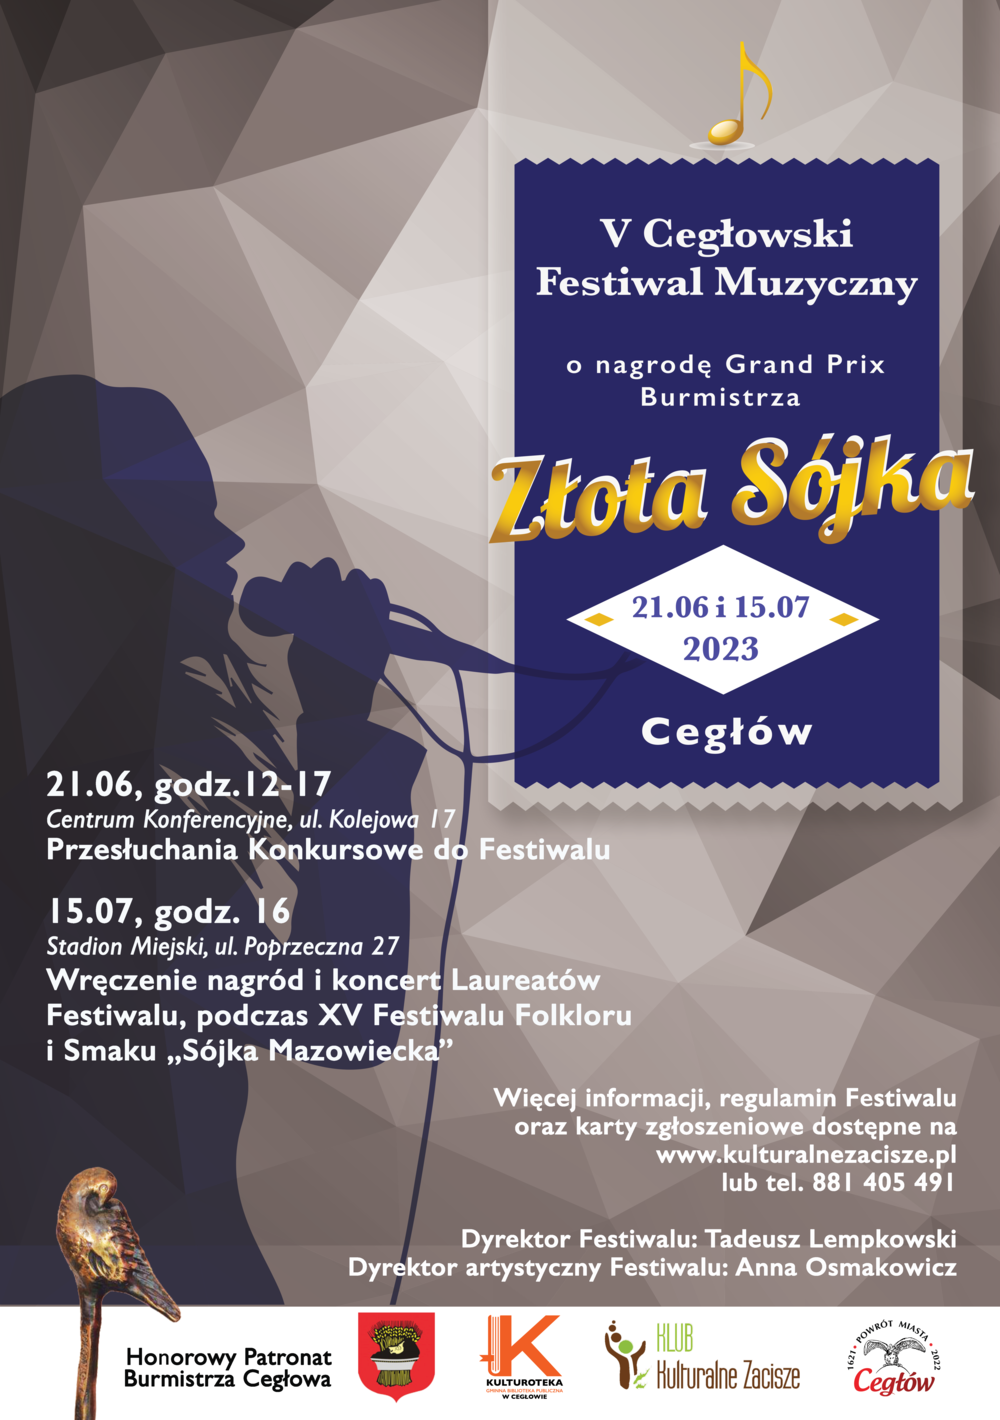 V Jubileuszowy Festiwal Muzyczny "Złota Sójka"